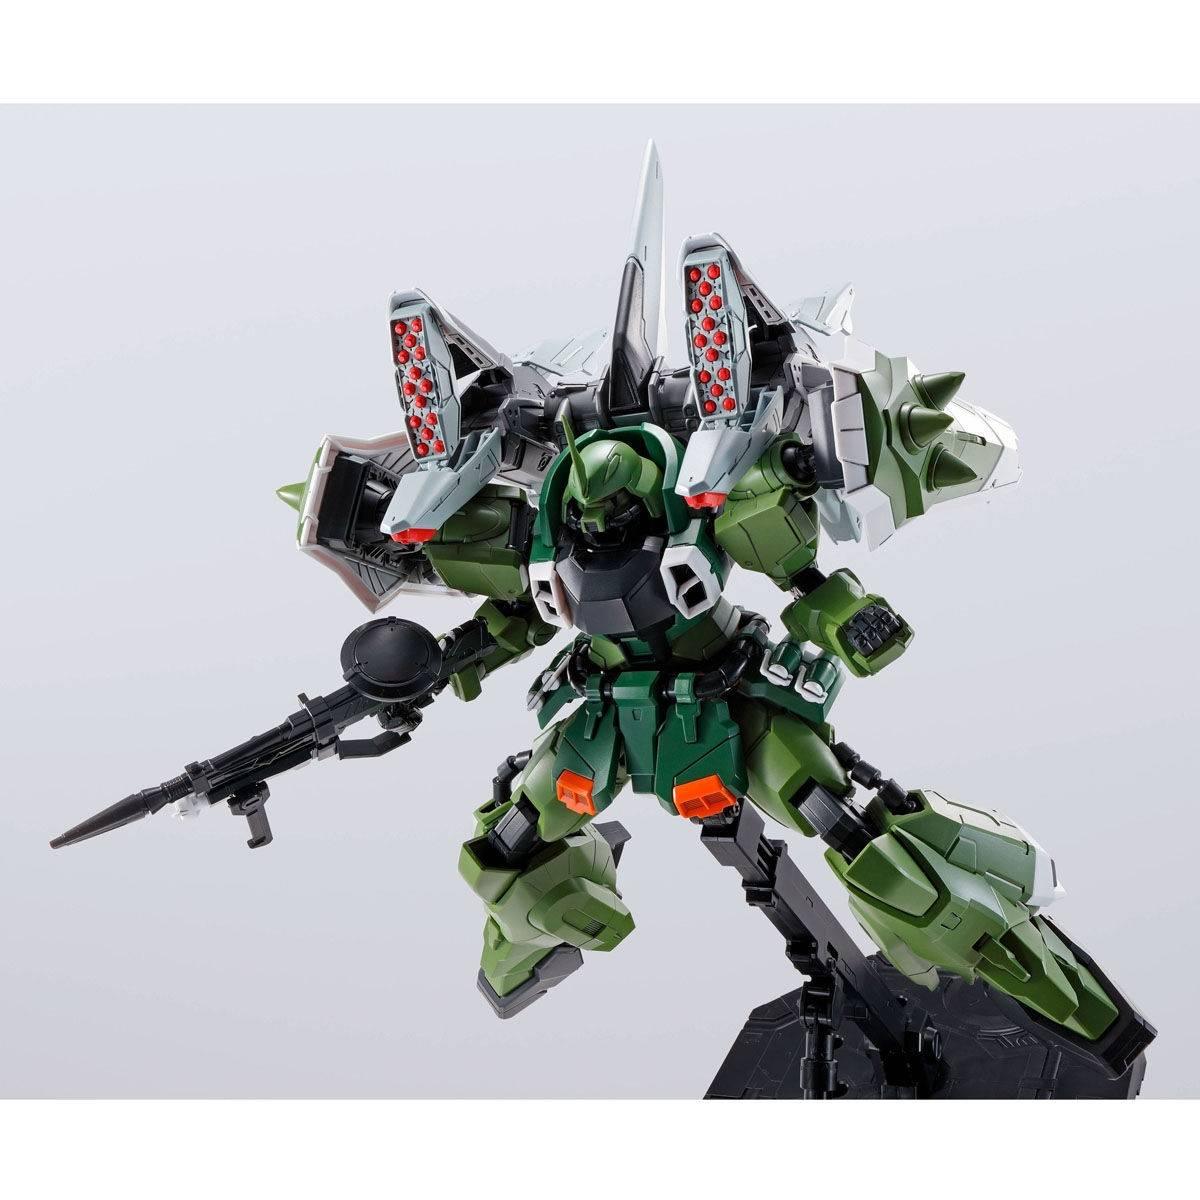 MG 1/100 BLAZE ZAKU PHANTOM / BLAZE ZAKU WARRIOR - Gundam Extra-Your BEST Gunpla Supplier